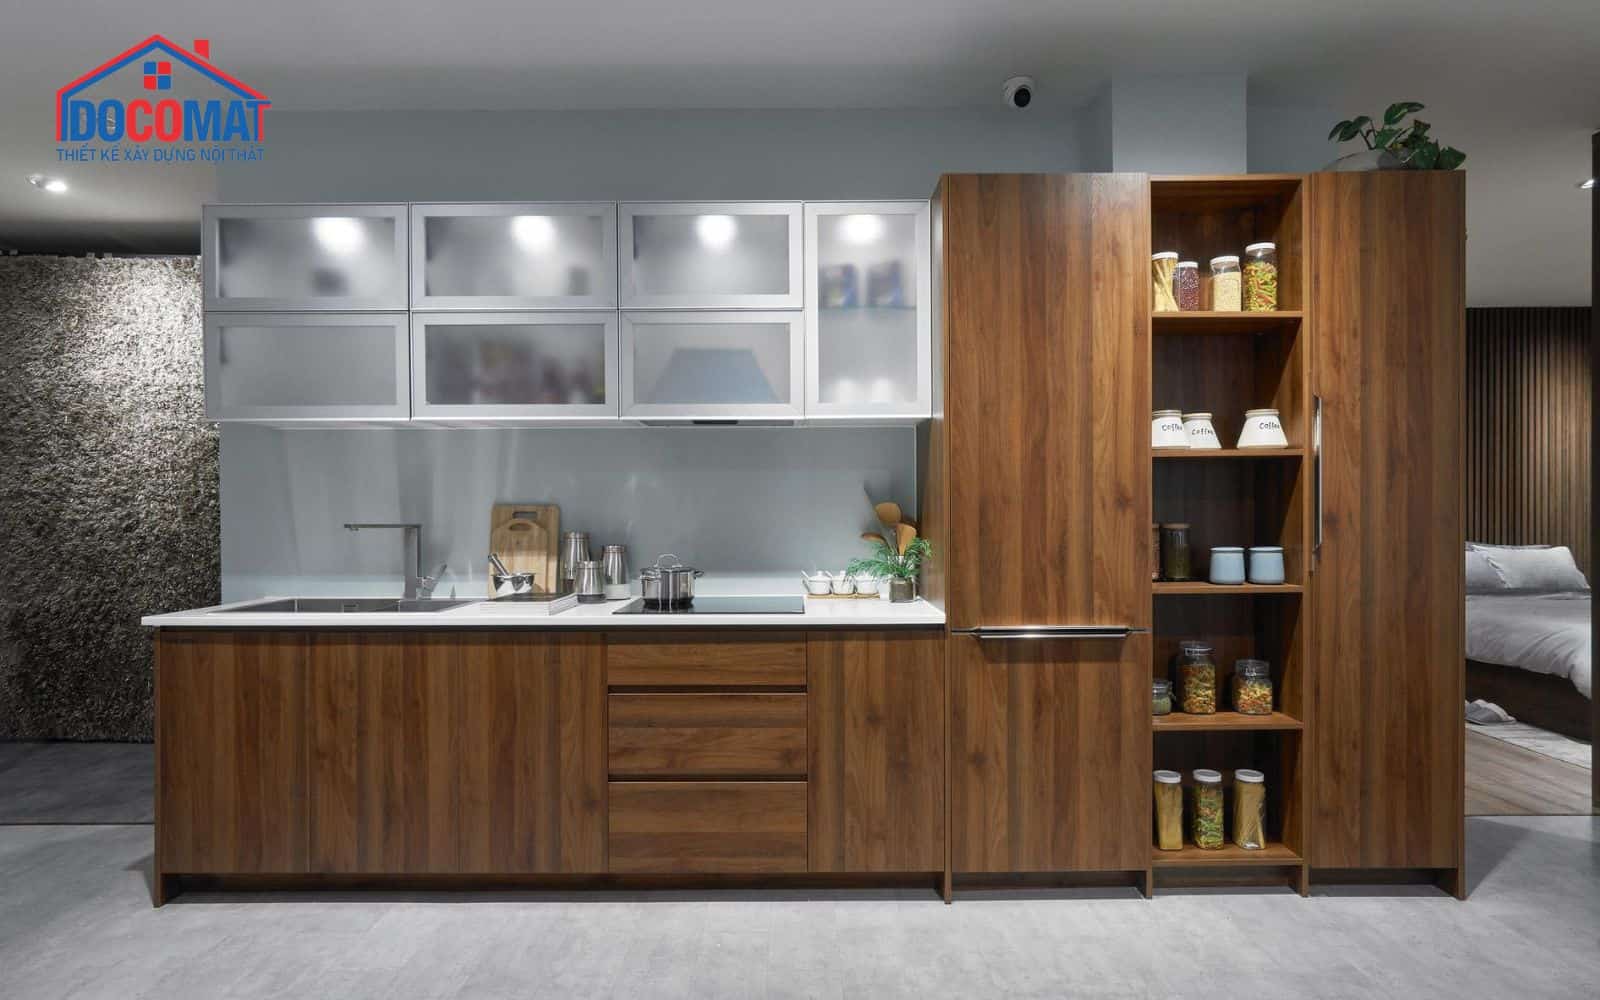 Tủ bếp công ty nội thất Docomat bao gồm phụ kiện đầy đủ